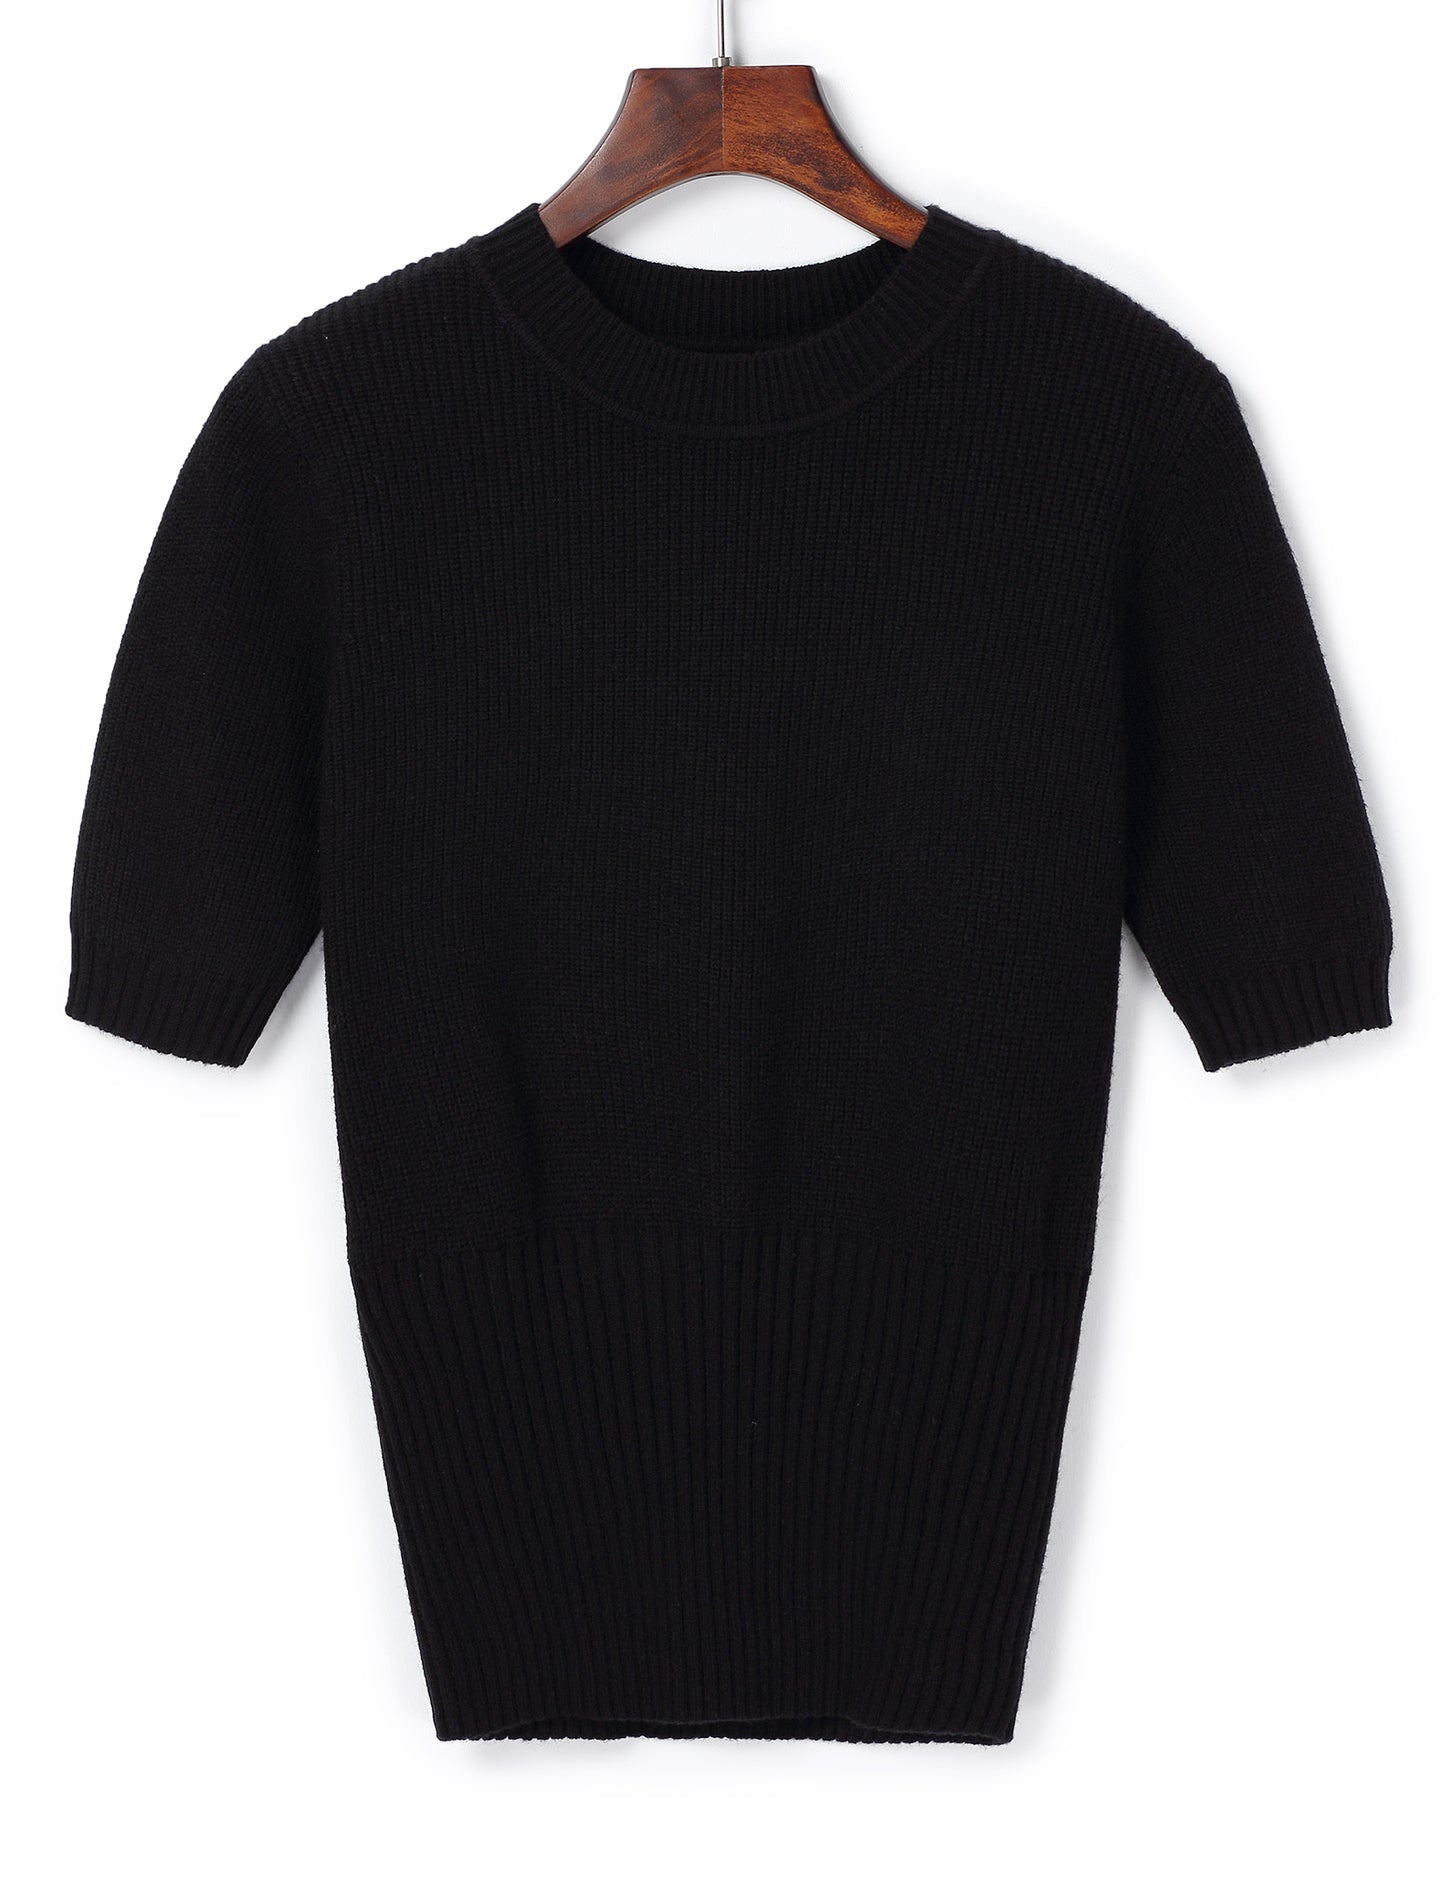 Women's Short Sleeve Sweater Knit Sweater